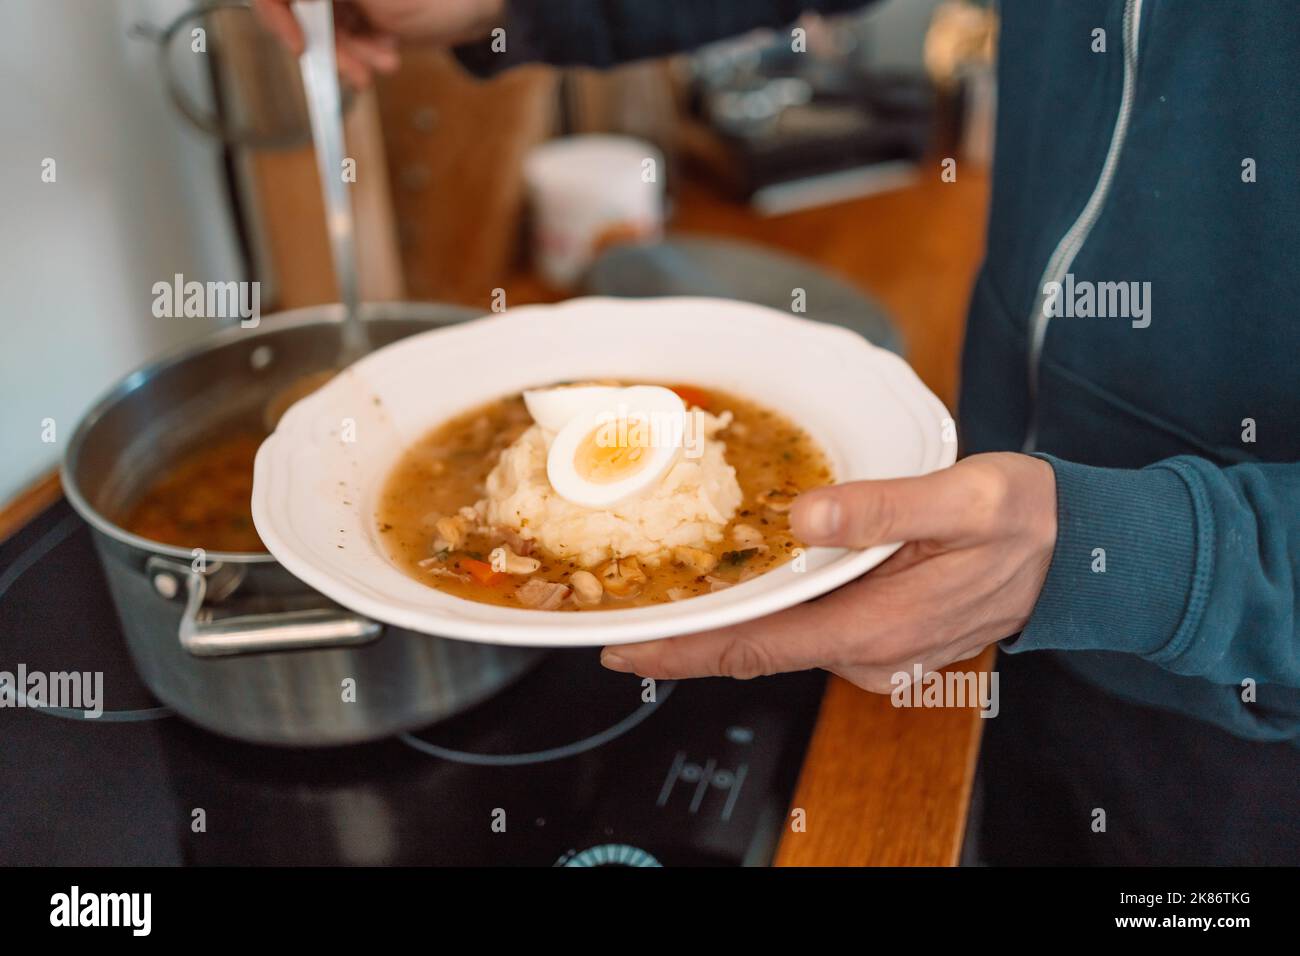 Soupe aigre traditionnelle polonaise Zurek dans un bol en céramique. Homme versant de la soupe dans un bol Banque D'Images